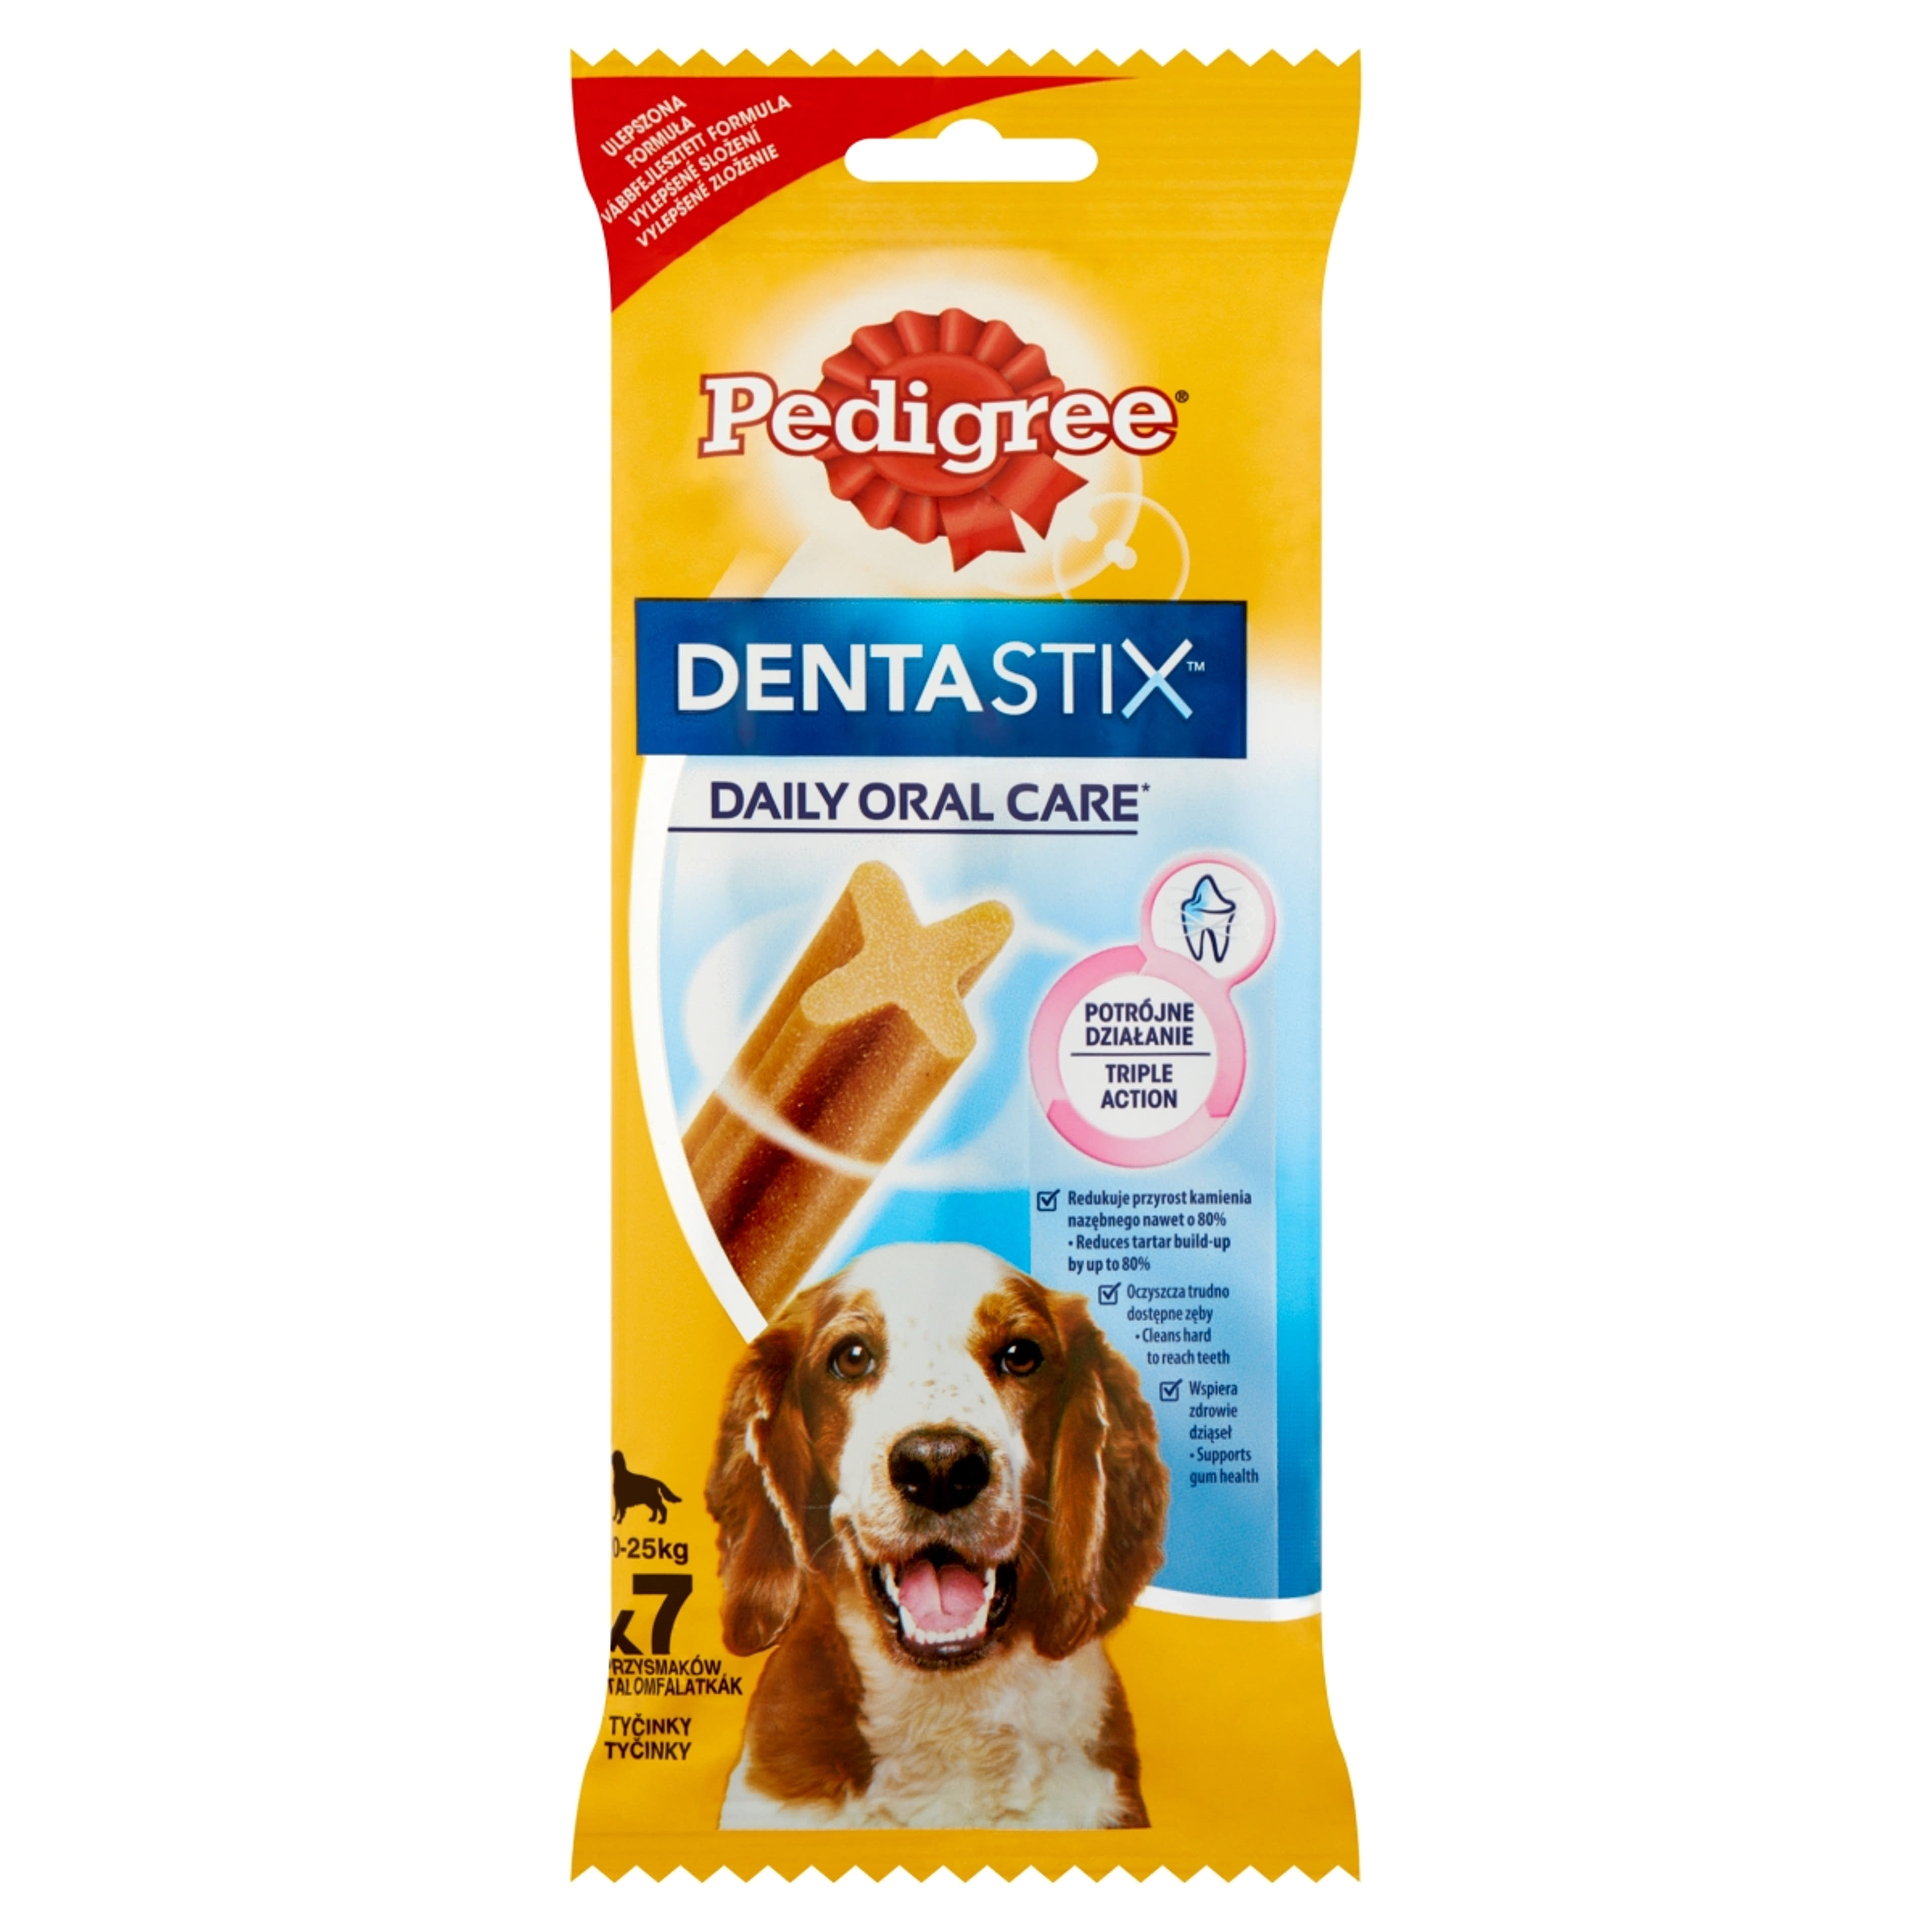 Pedigree DentaStix 4 hónapnál idősebb kiegészítő szárazeledel kutyáknak, 7 db - 180 g-1